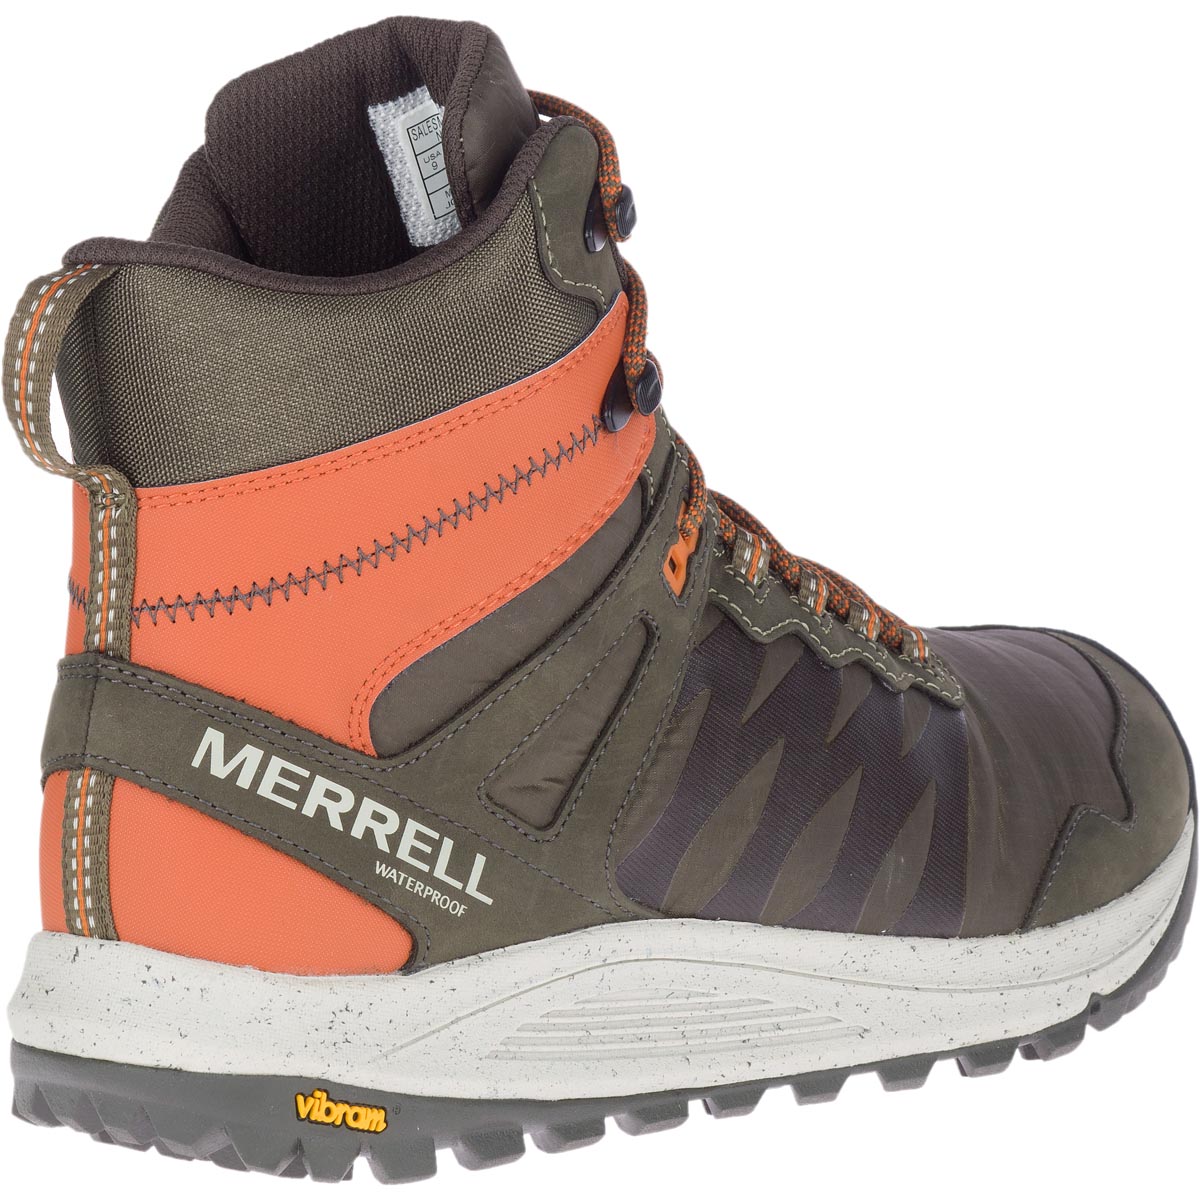 Merrell Men's Nova Sneaker Waterproof Boot